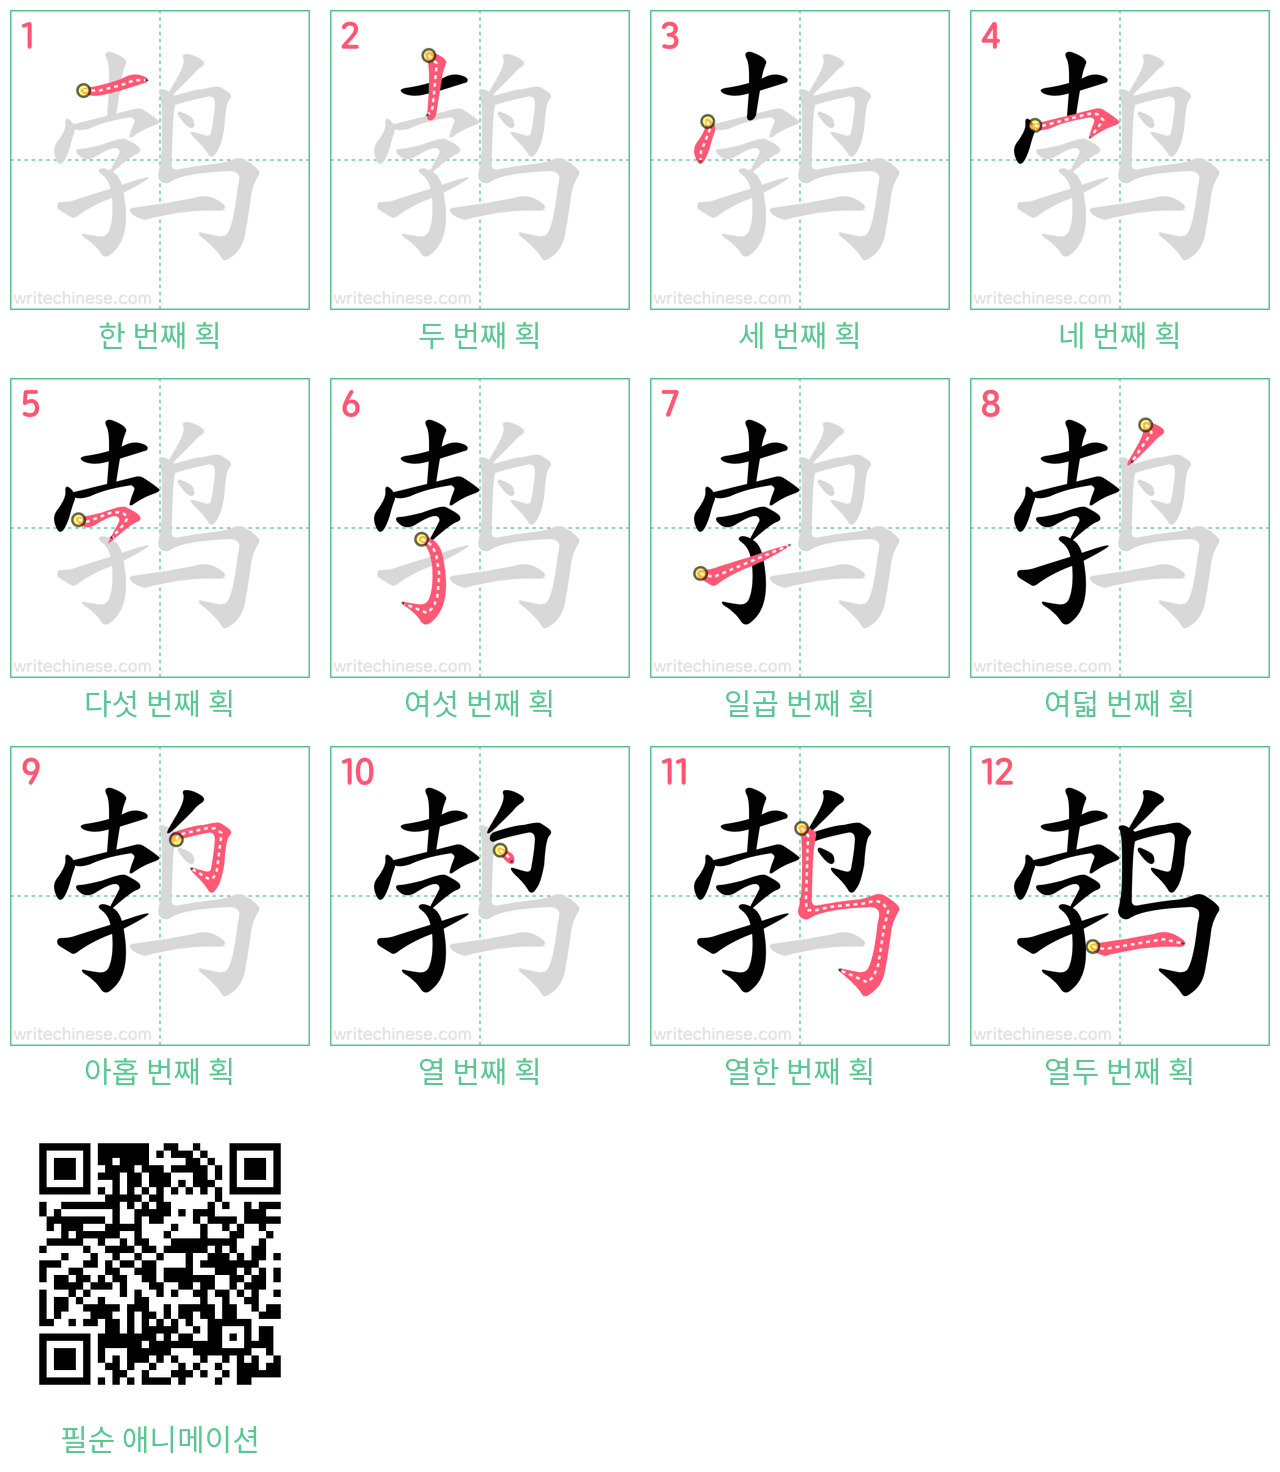 鹁 step-by-step stroke order diagrams